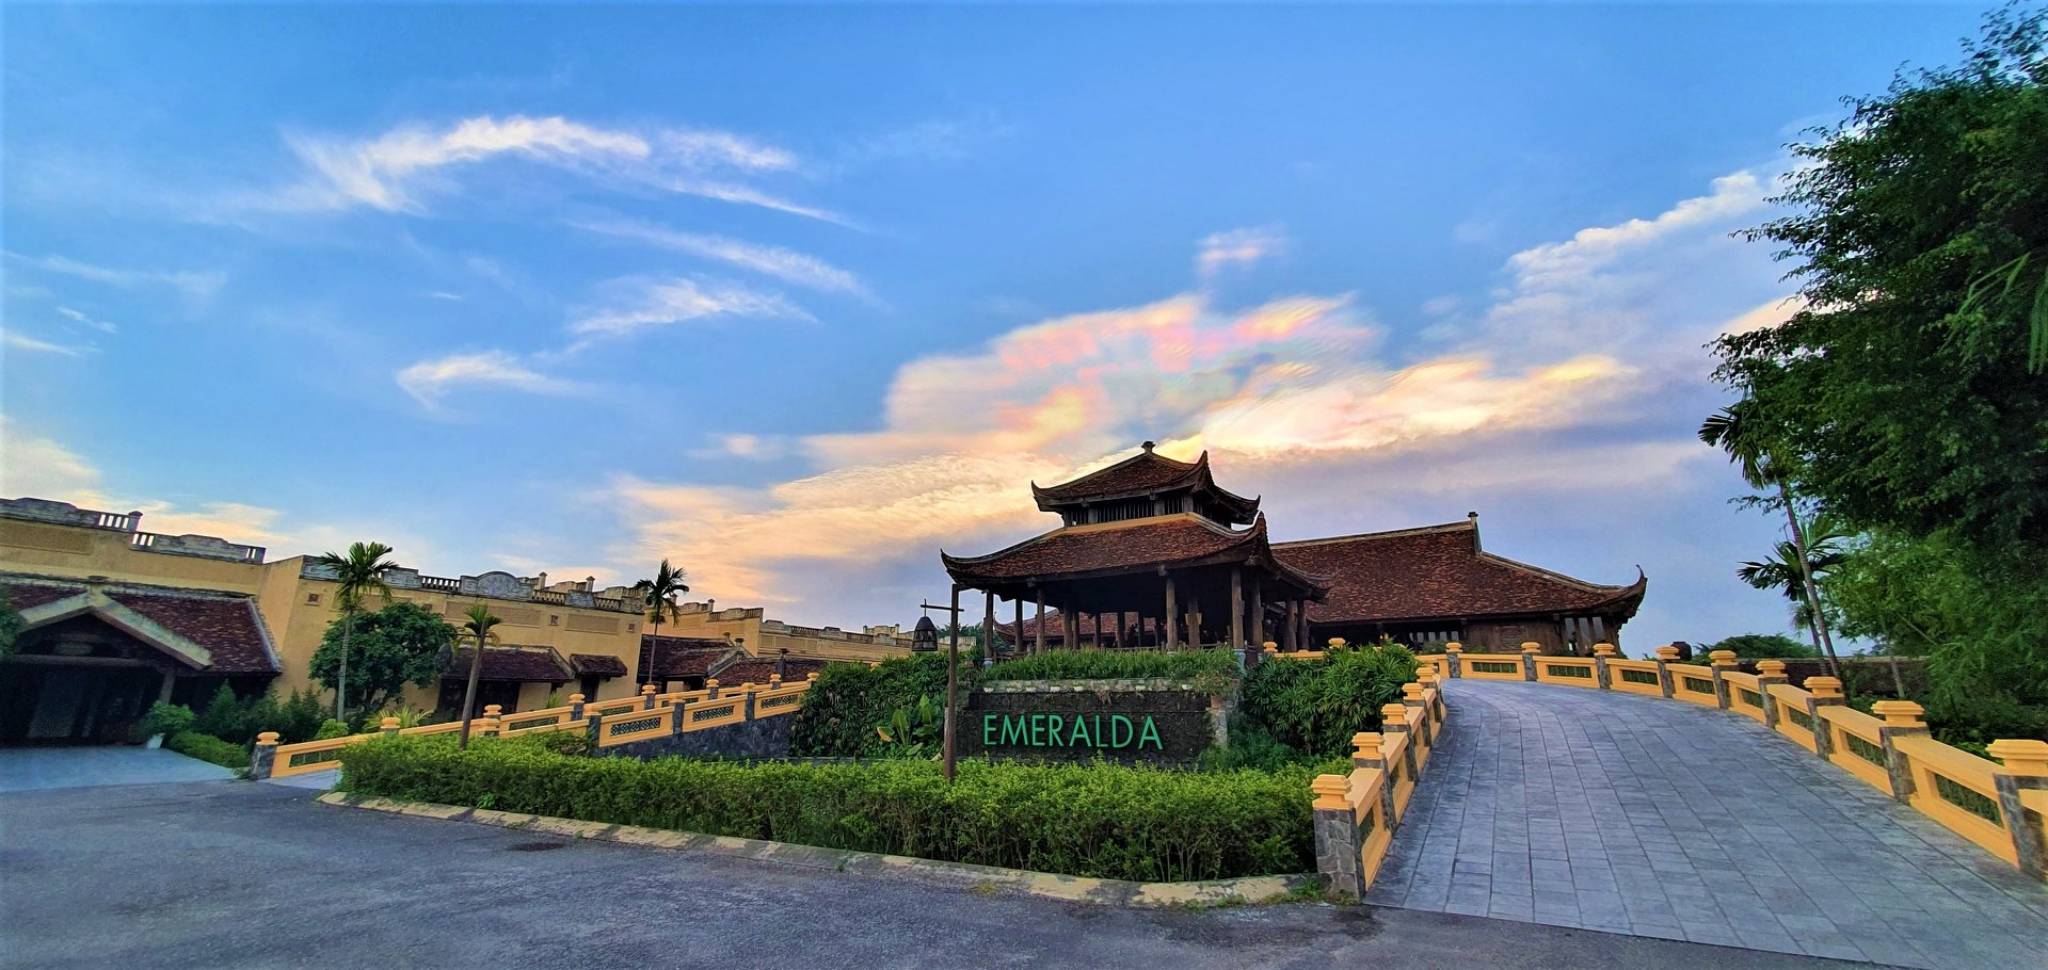 Review Emeralda Resort Ninh Binh: Tái hiện vẻ đẹp cung đình xưa